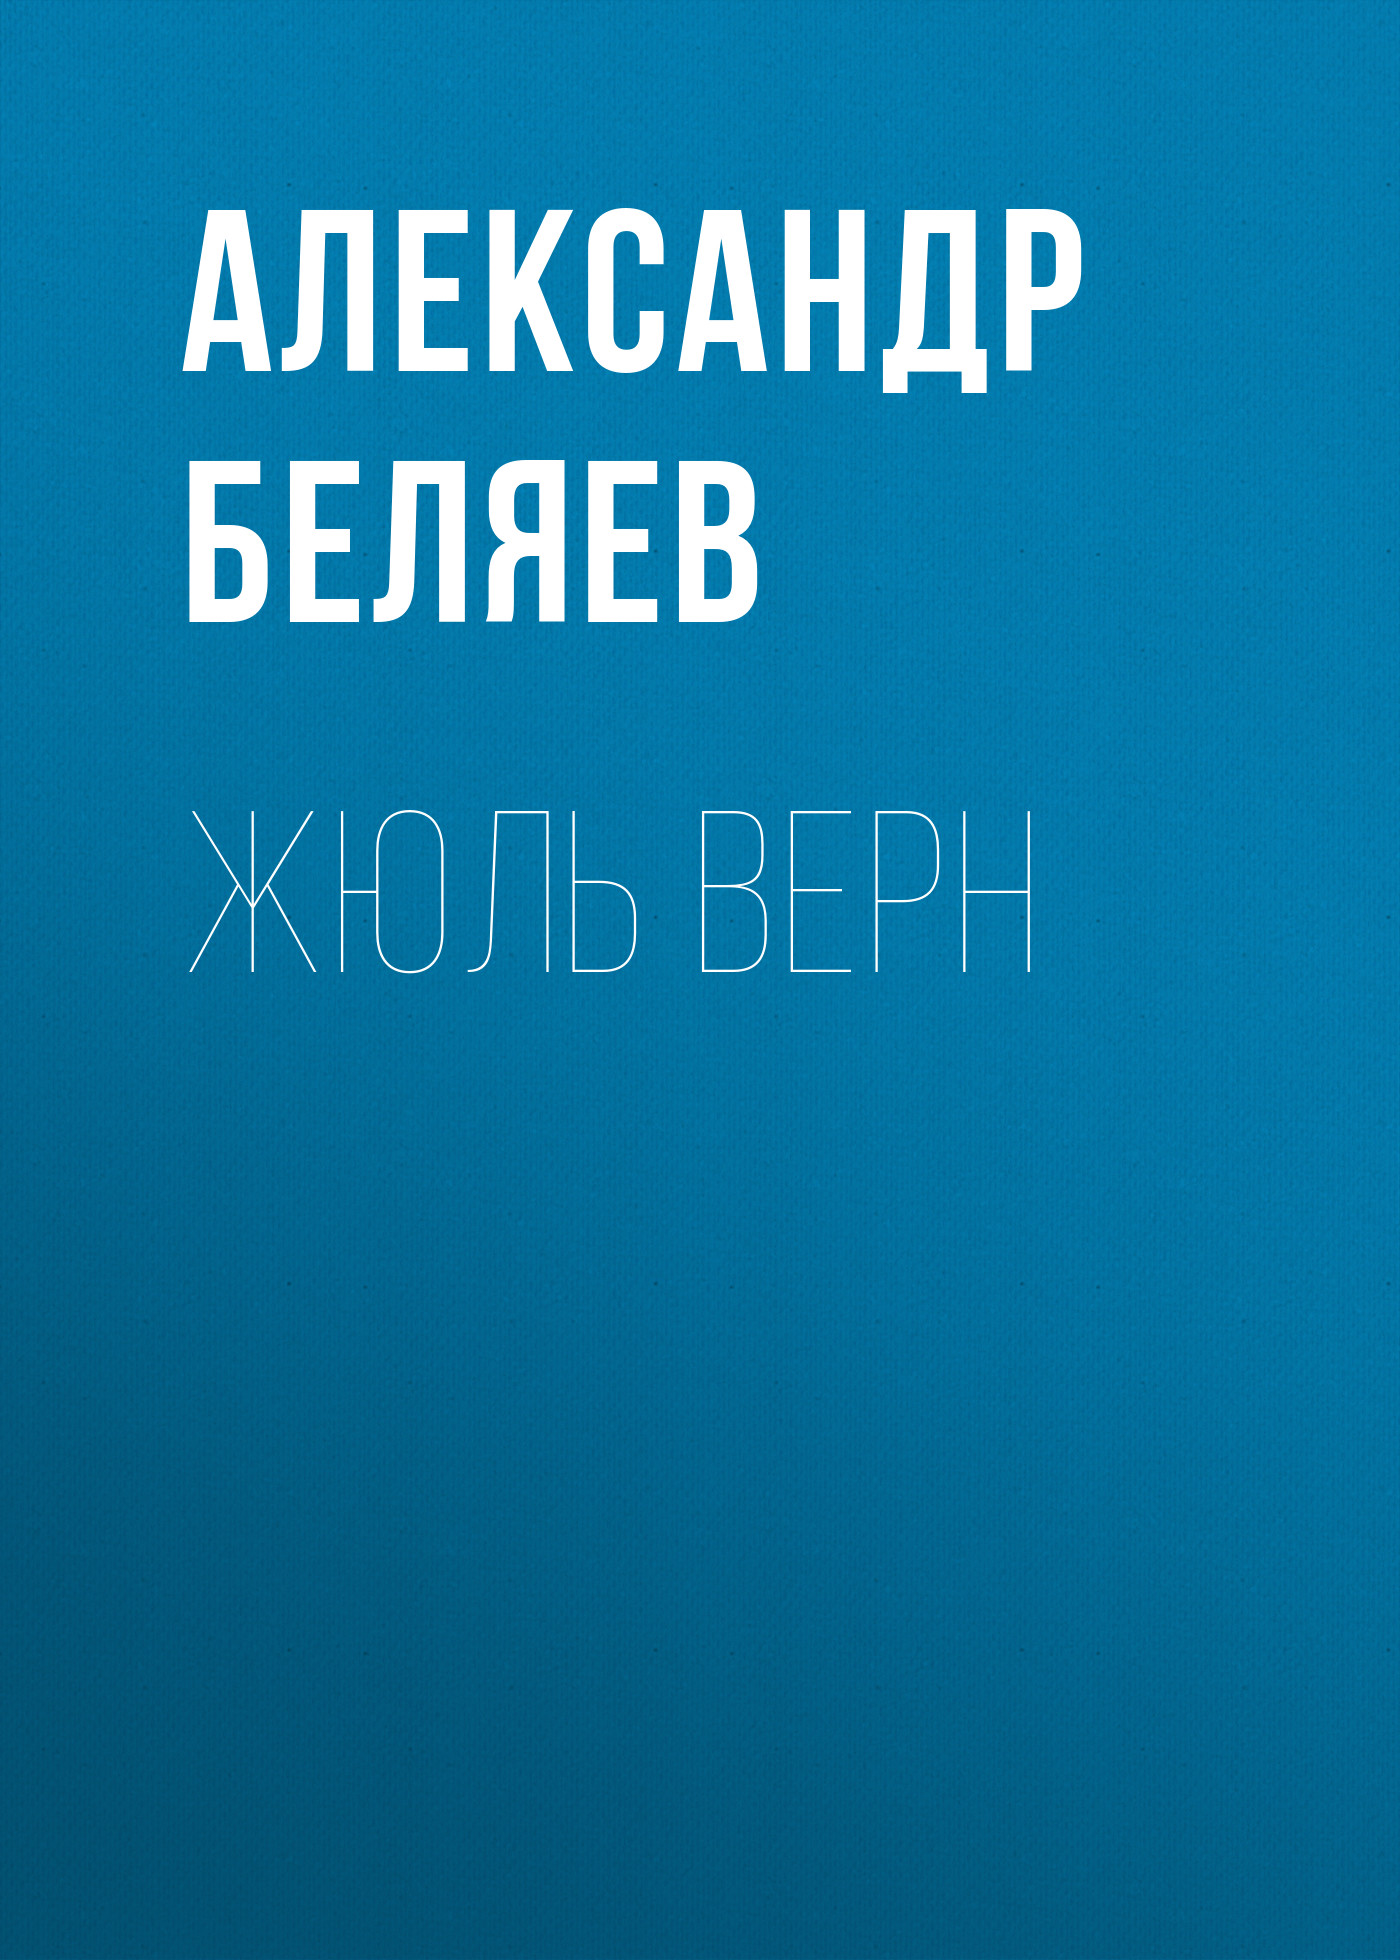 Книга Жюль Верн из серии , созданная Александр Беляев, может относится к жанру Критика. Стоимость электронной книги Жюль Верн с идентификатором 24920950 составляет 5.99 руб.